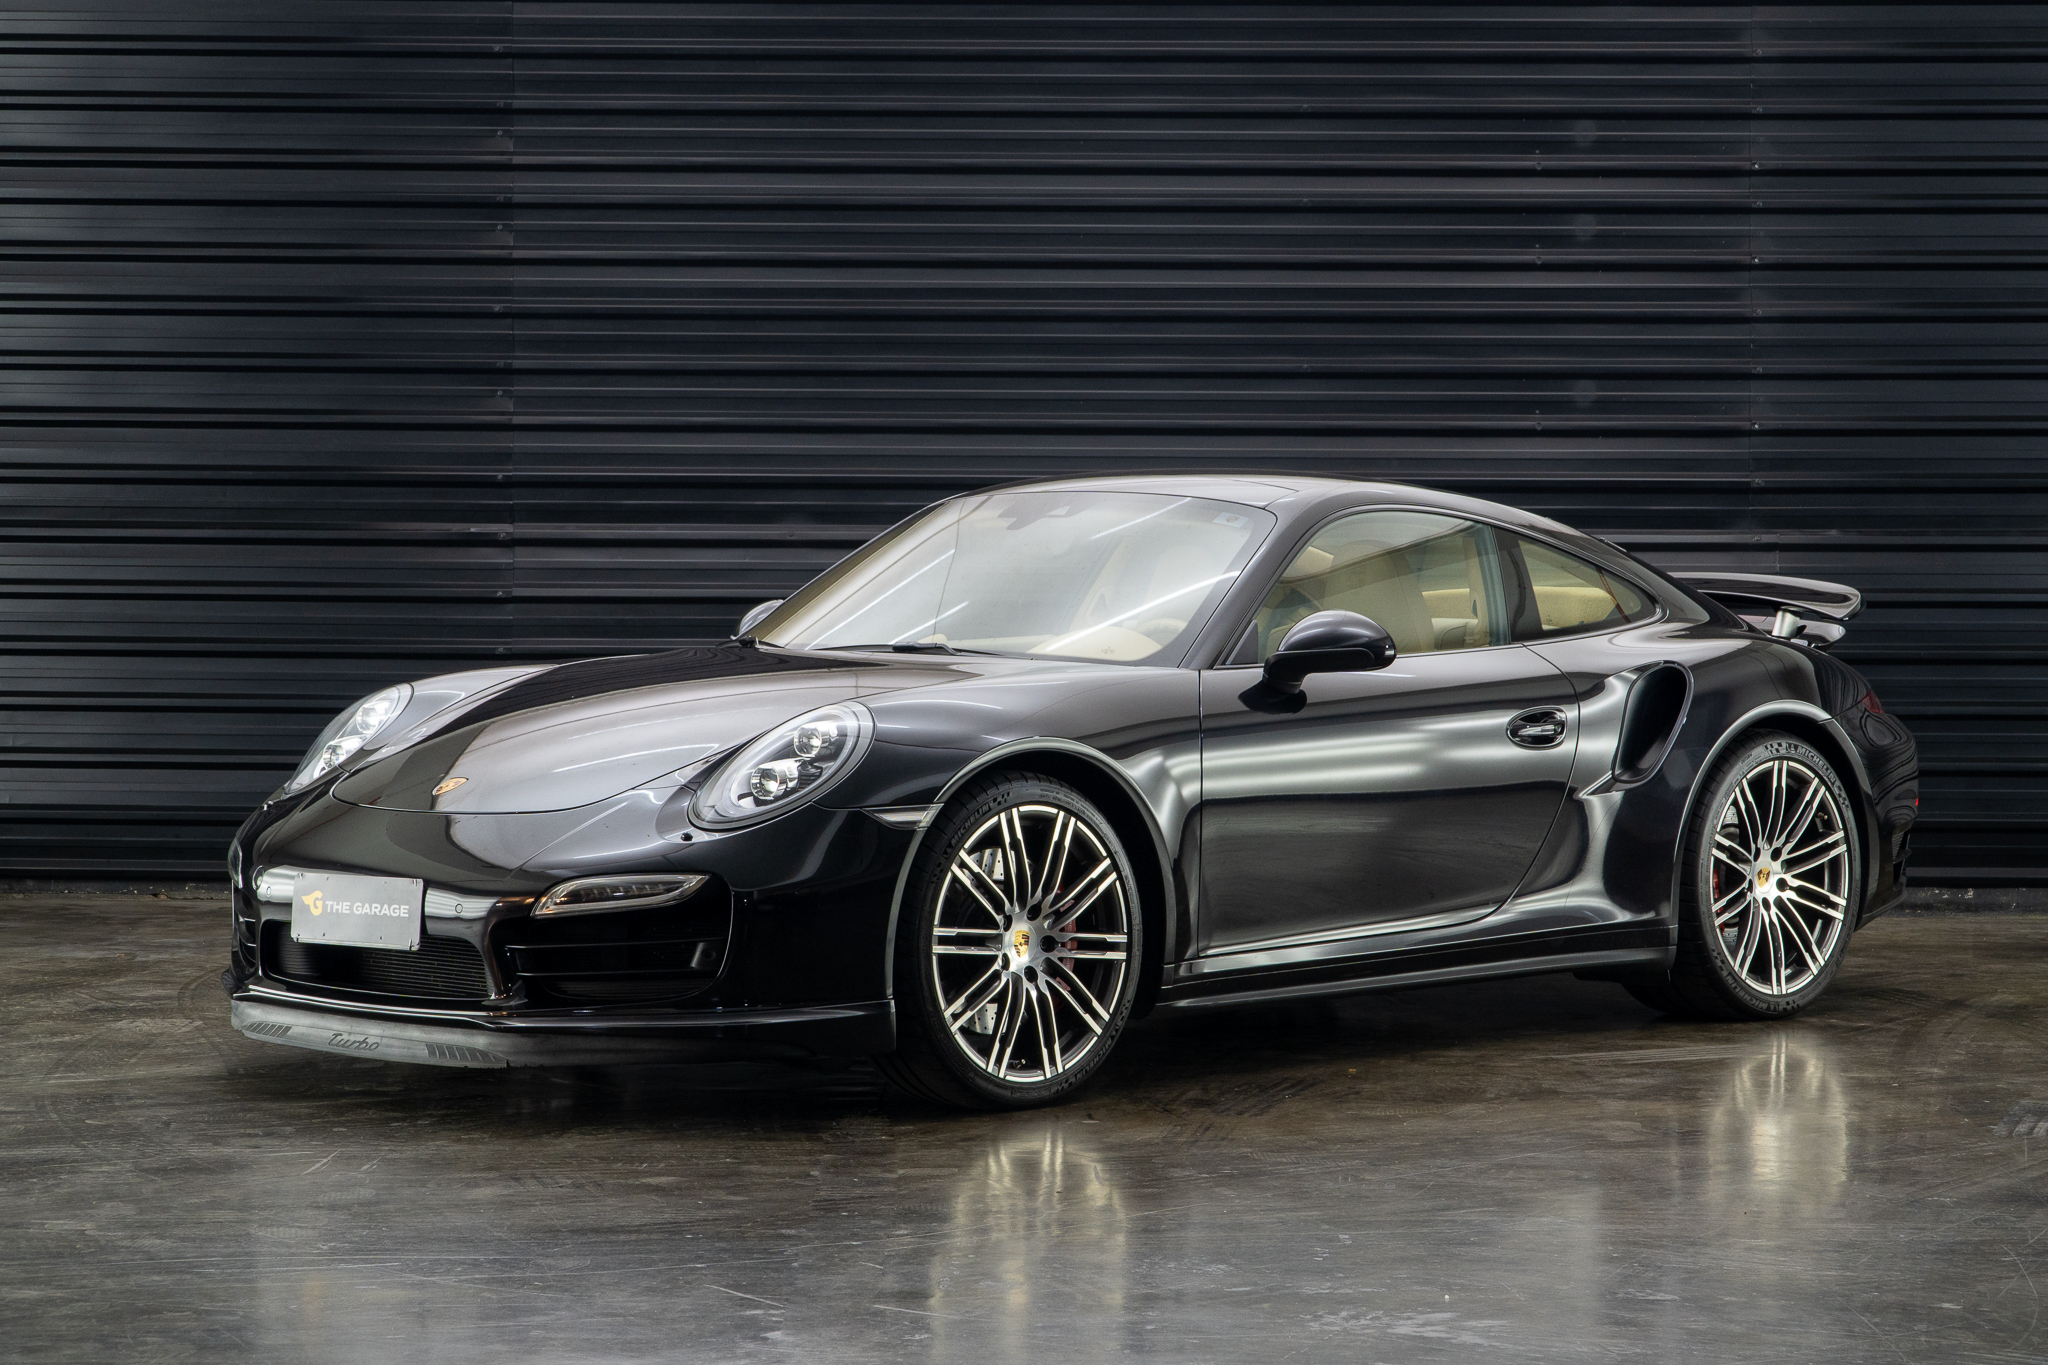 2014 Porsche 911 Turbo a venda The garage